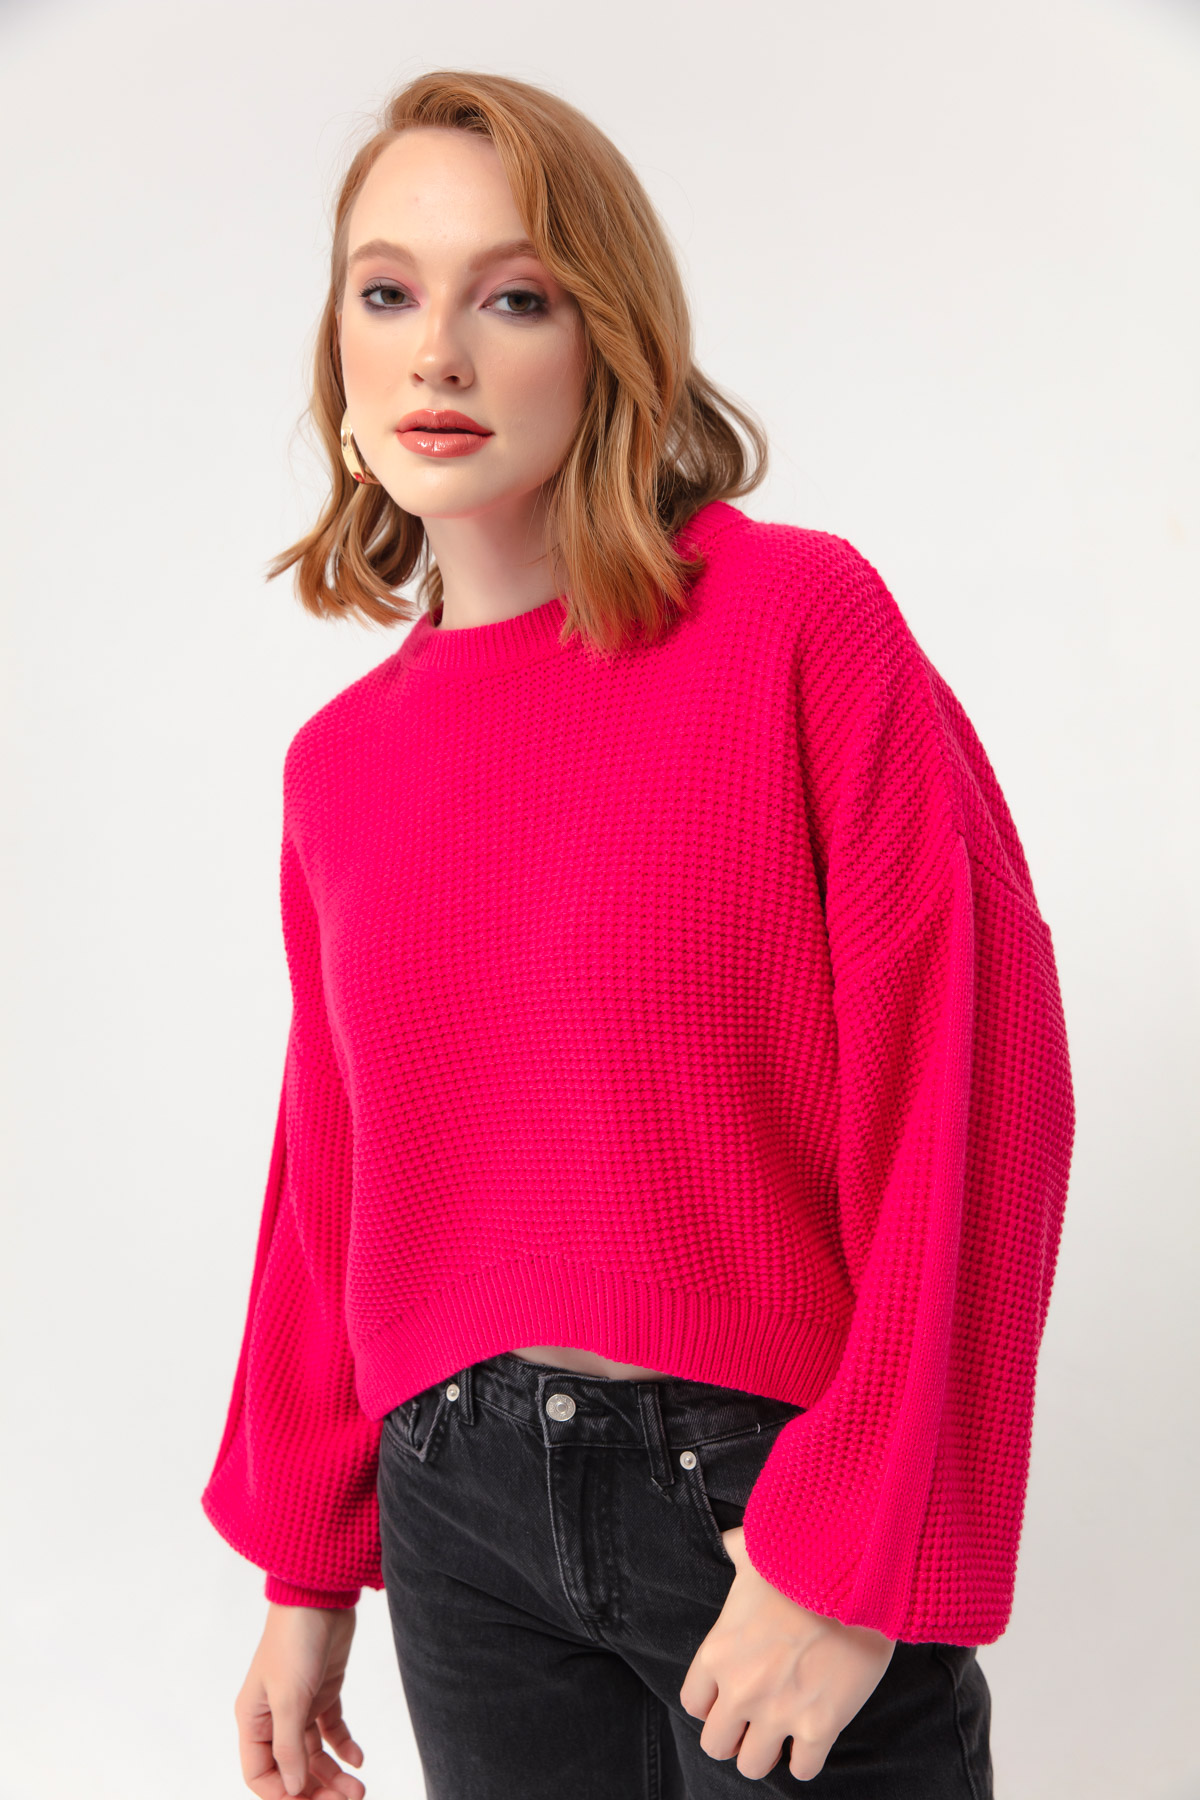 Women's Fuchsia Crew Neck Knitwear Sweater